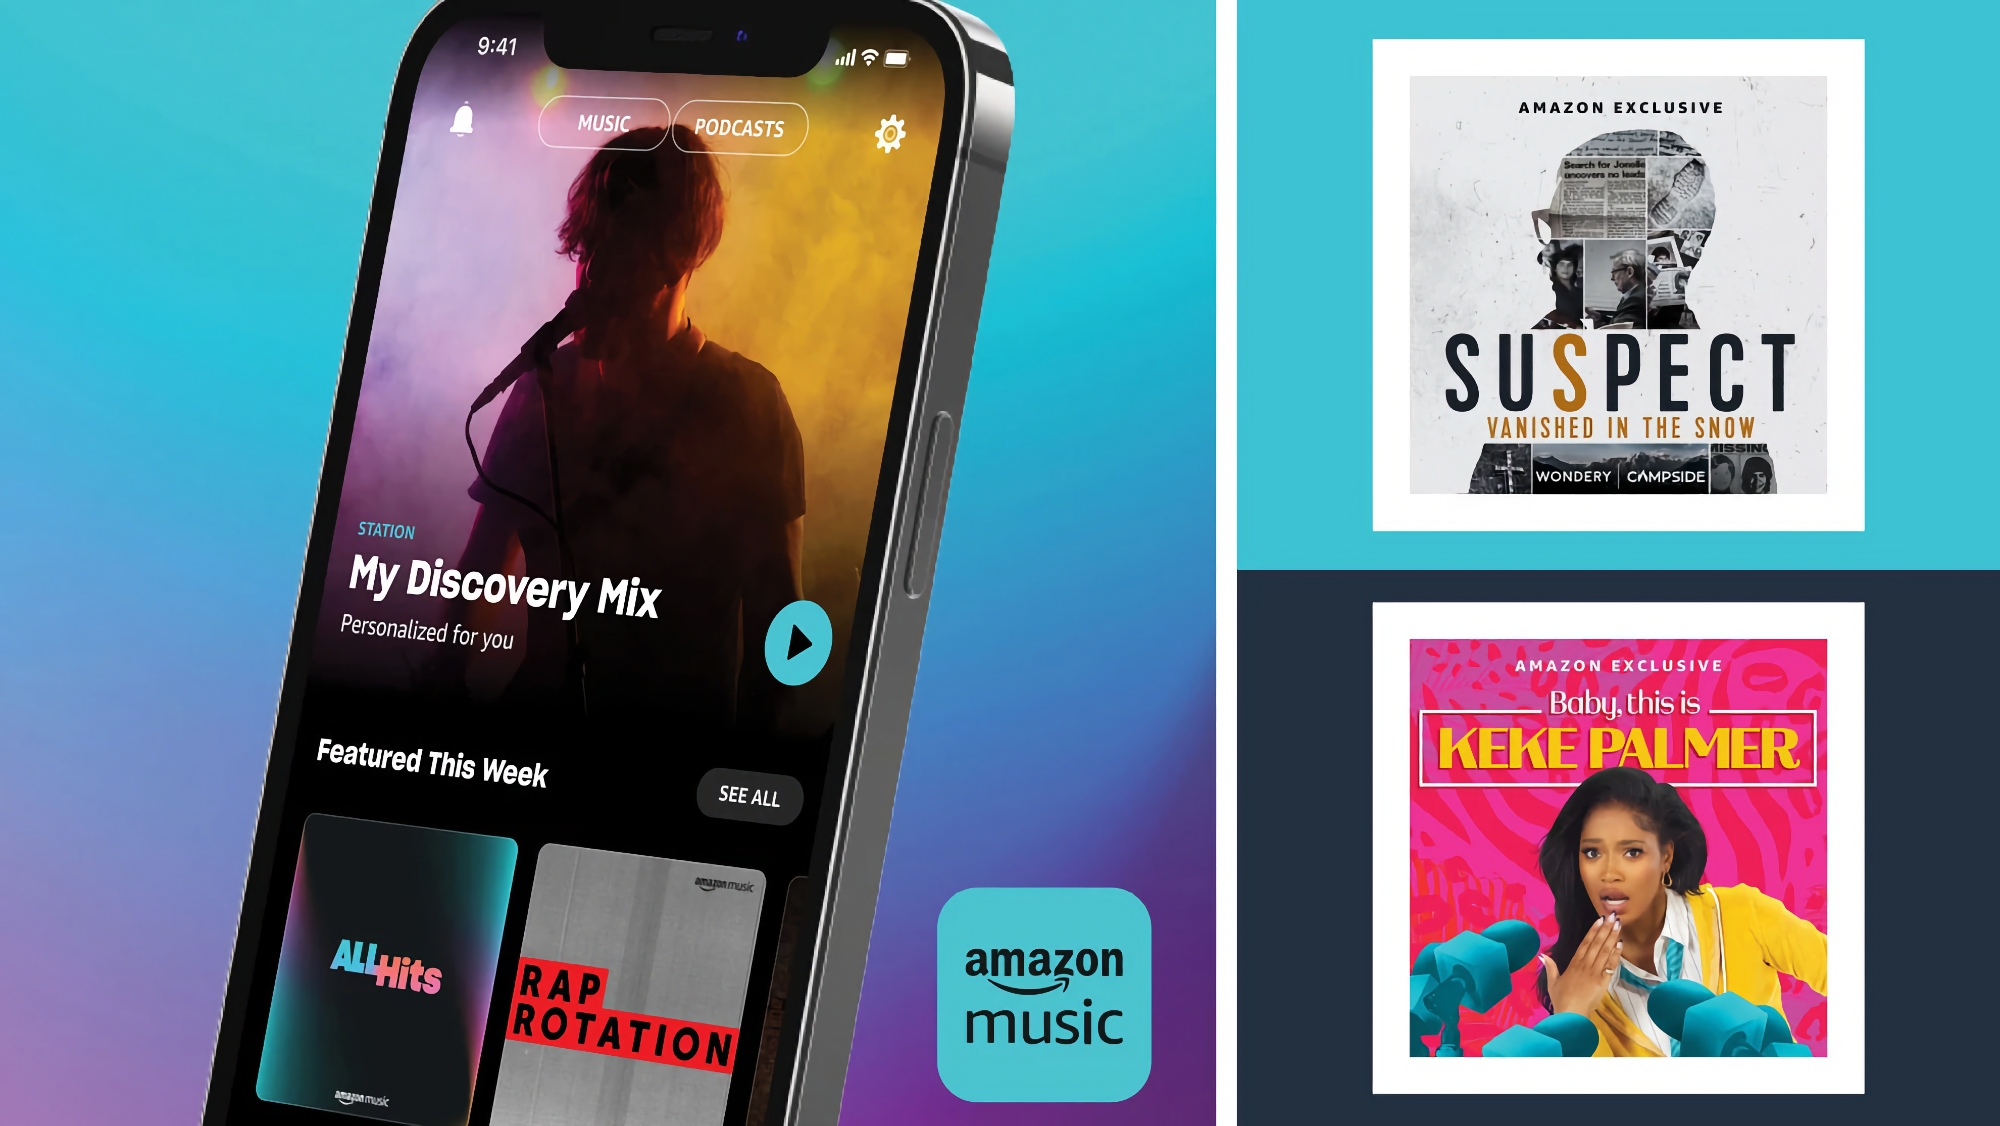 Les abonnés Amazon Prime bénéficient d'un accès gratuit à toutes les chansons et podcasts d'Amazon Music